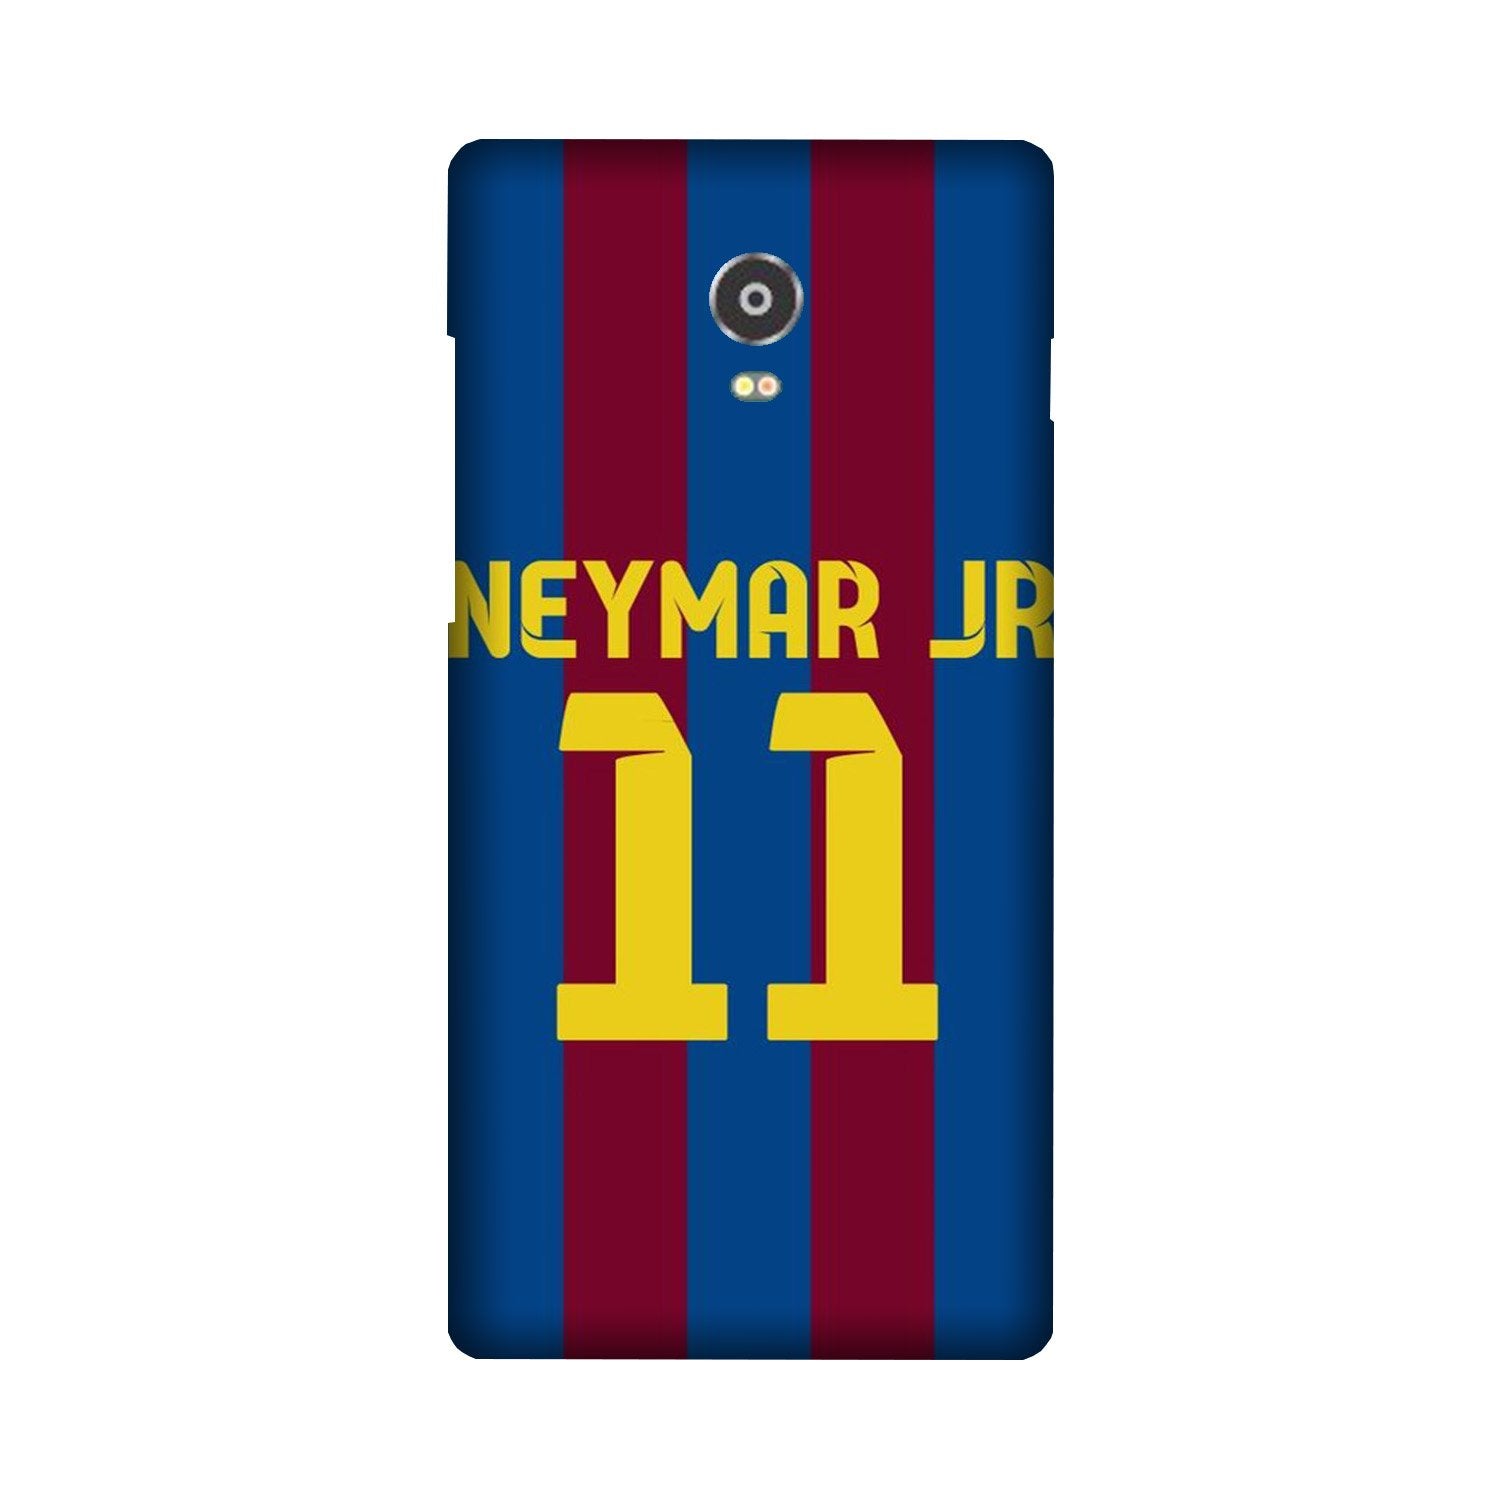 Neymar Jr Case for Lenovo Vibe P1(Design - 162)